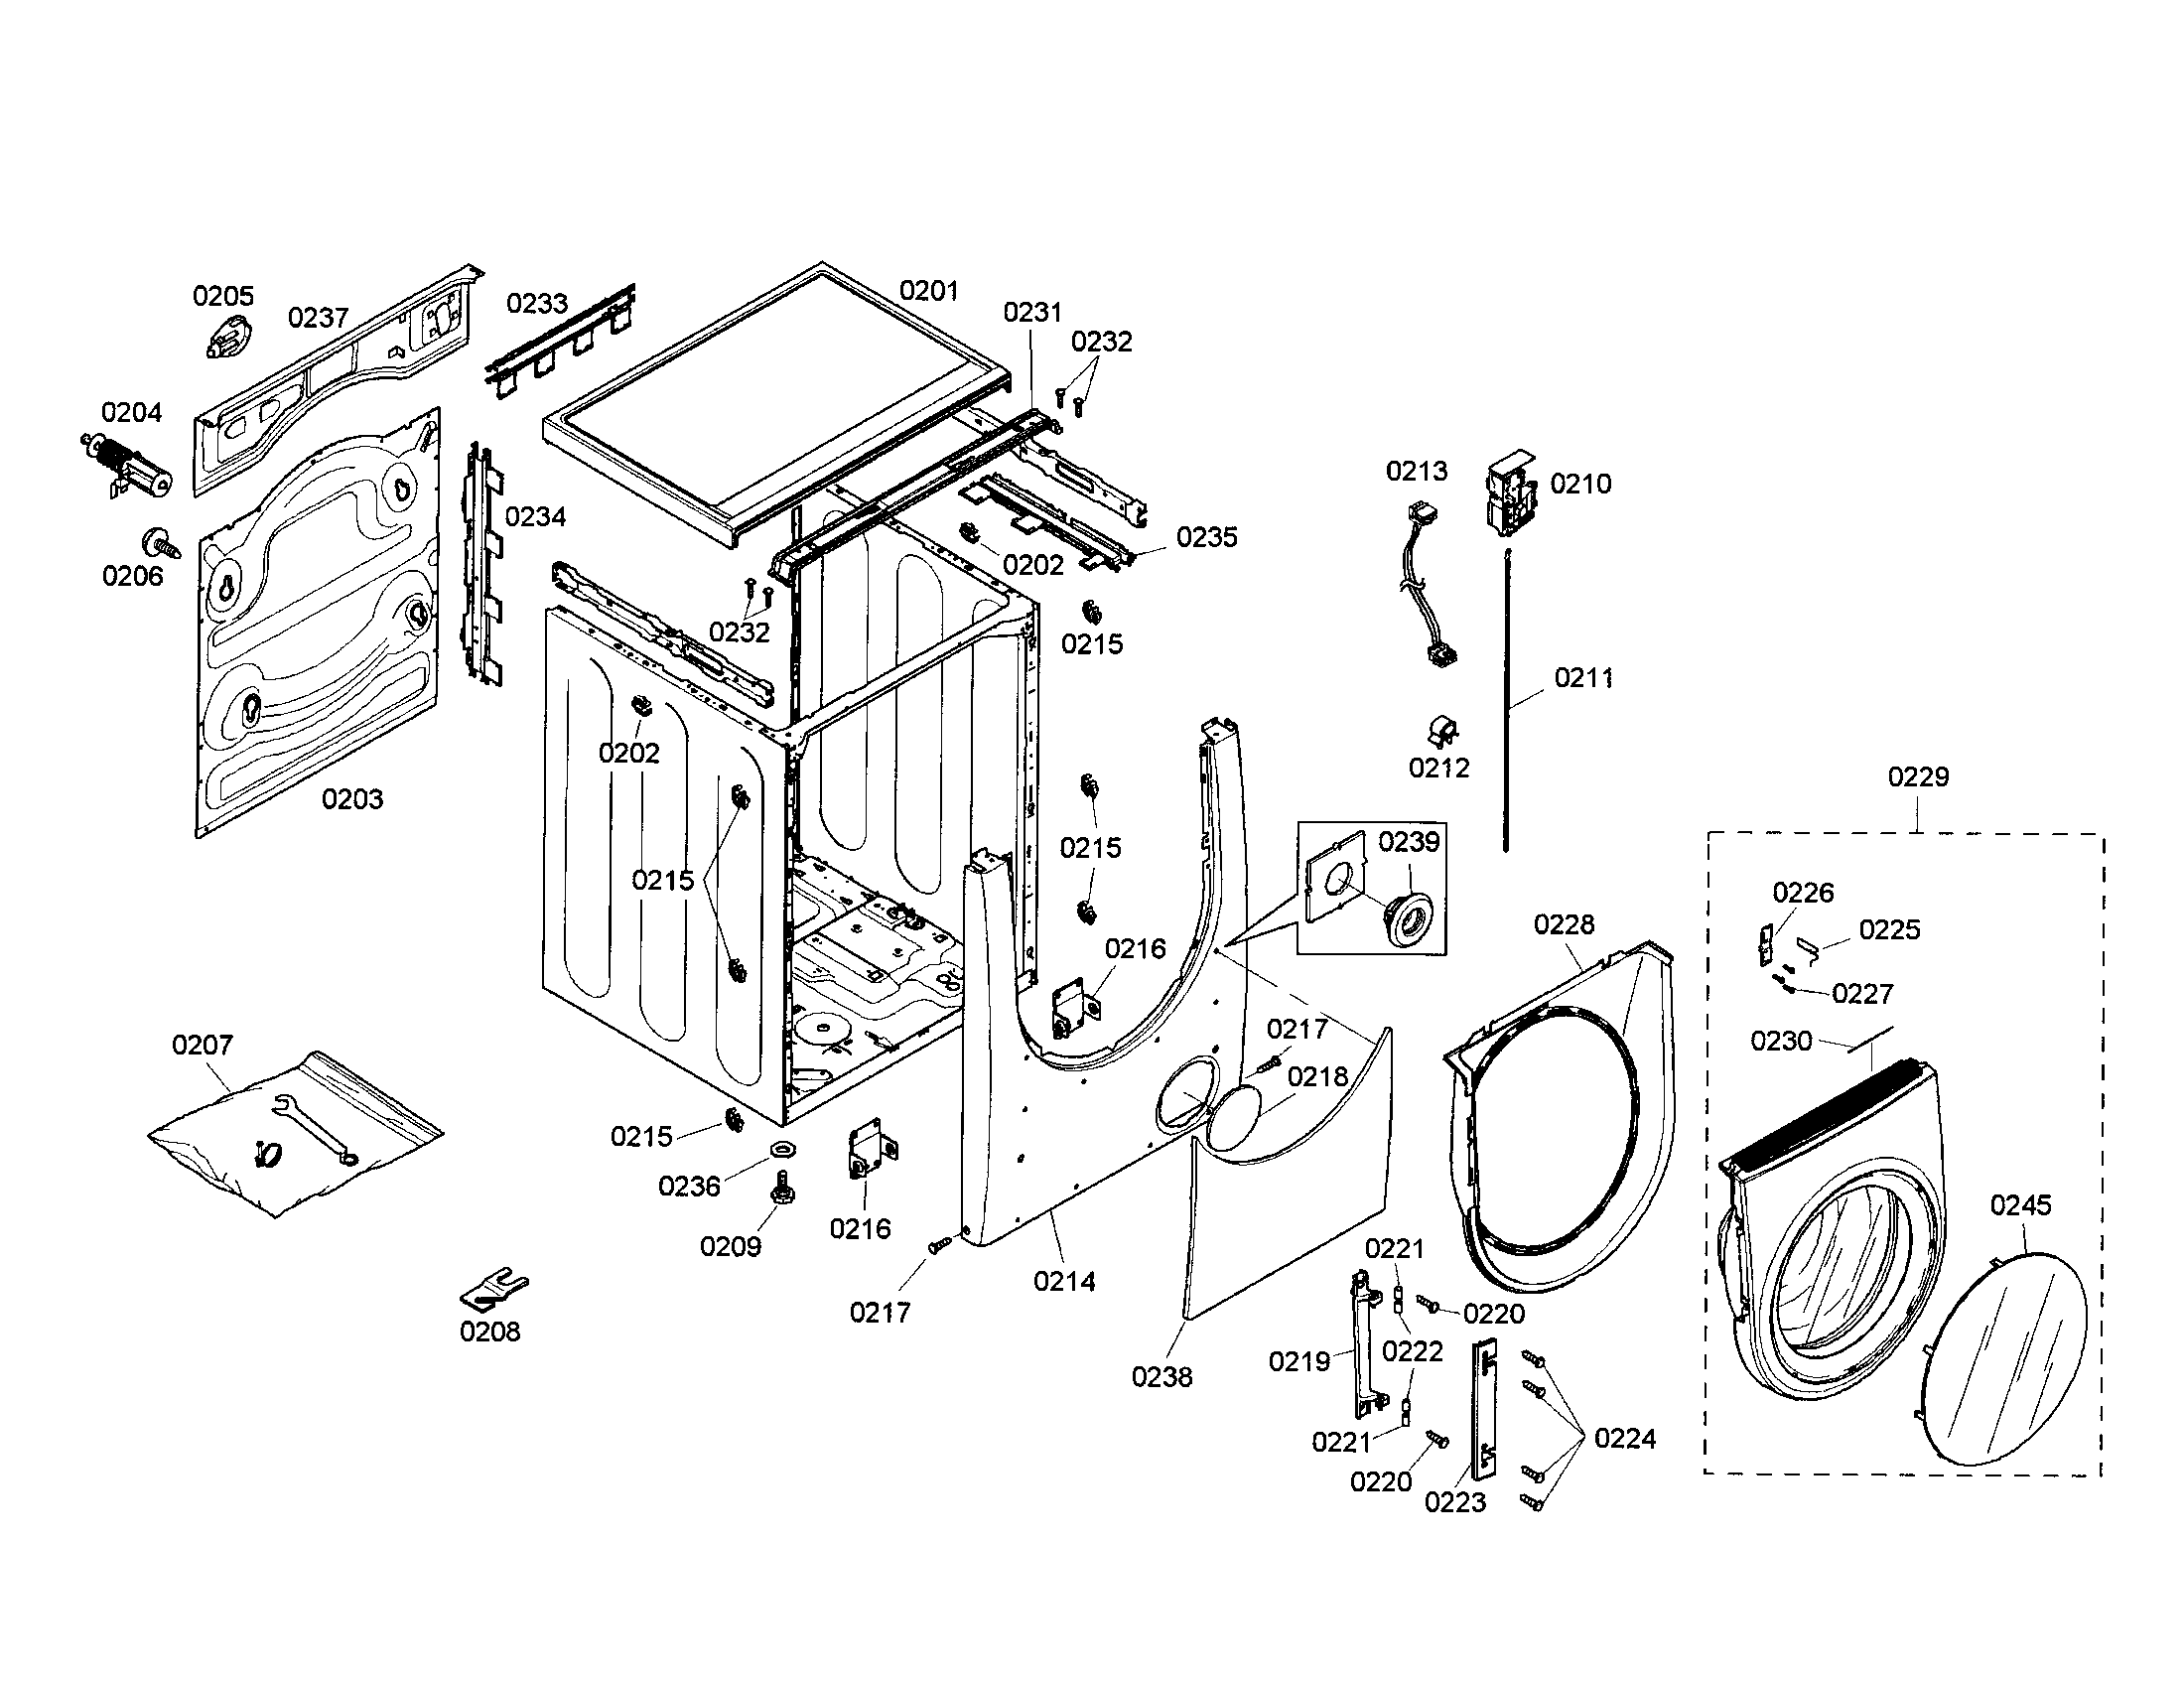 bosch nexxt 500 series washer parts diagram